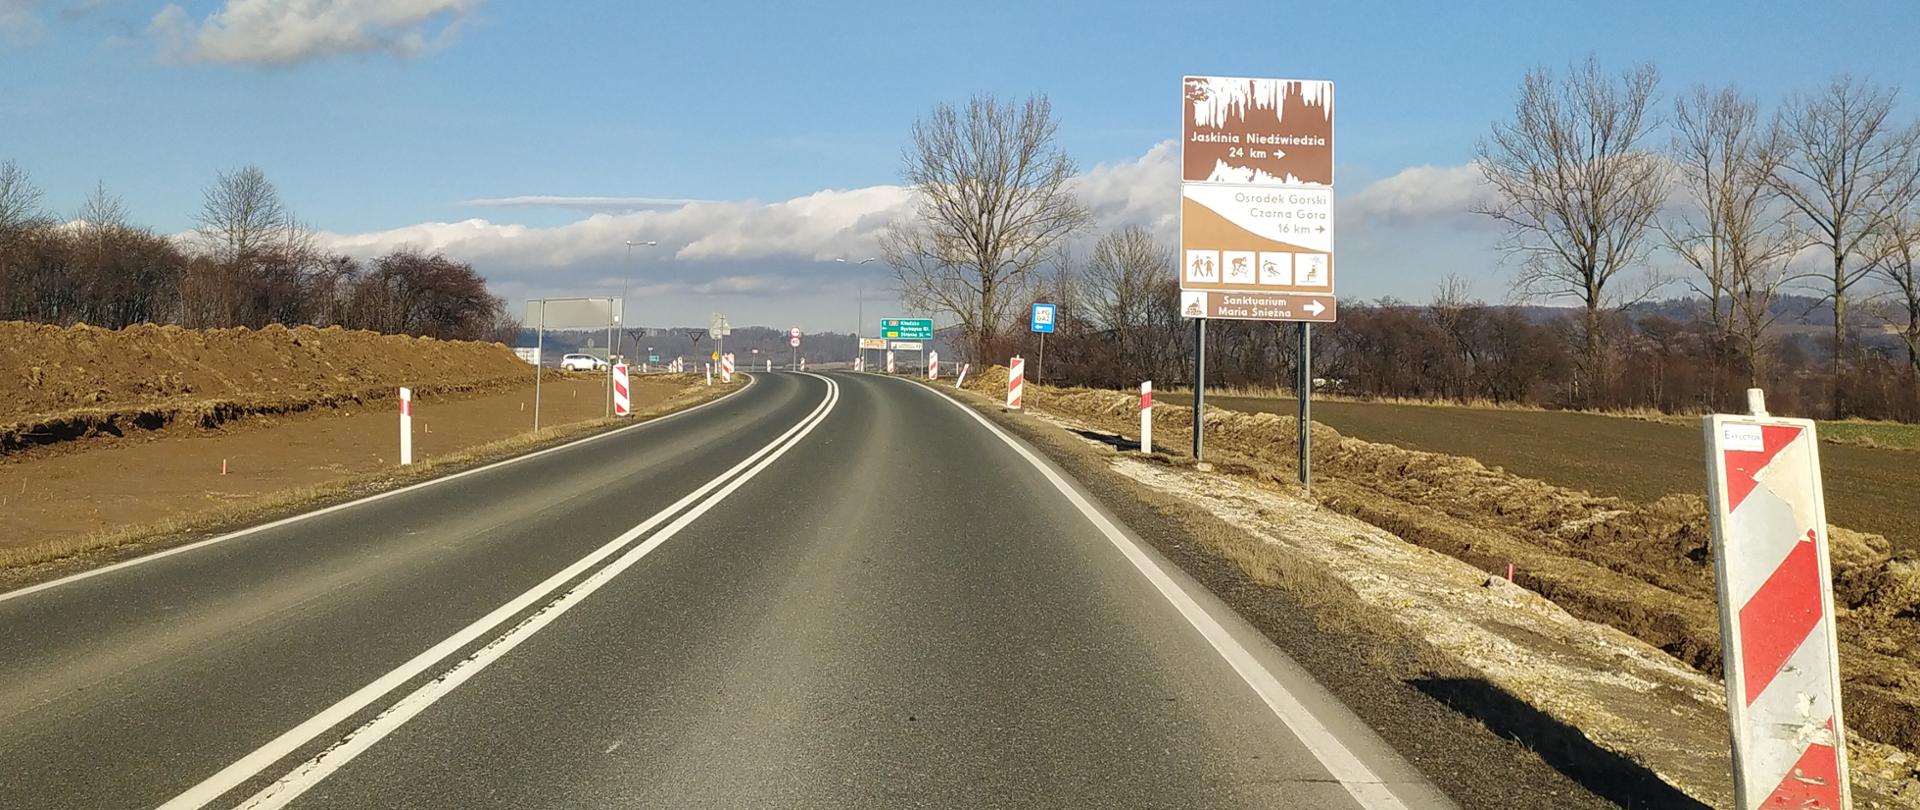 Na zdjęciu widać drogę krajową nr 33 w okolicy Bystrzycy Kłodzkiej.